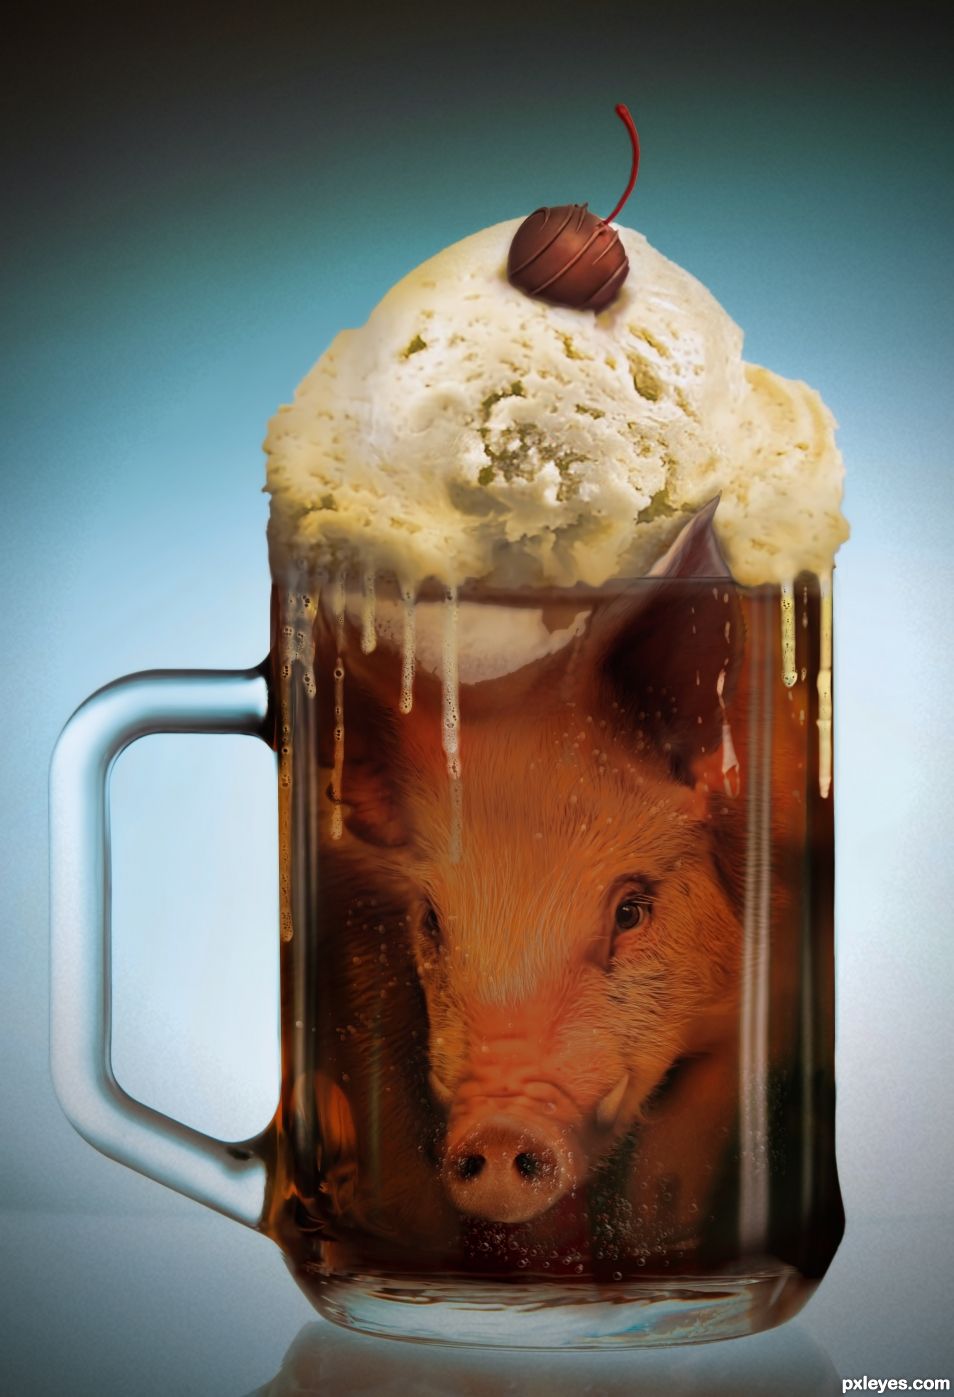 Creation of Root Boar - Pork Soda: Final Result